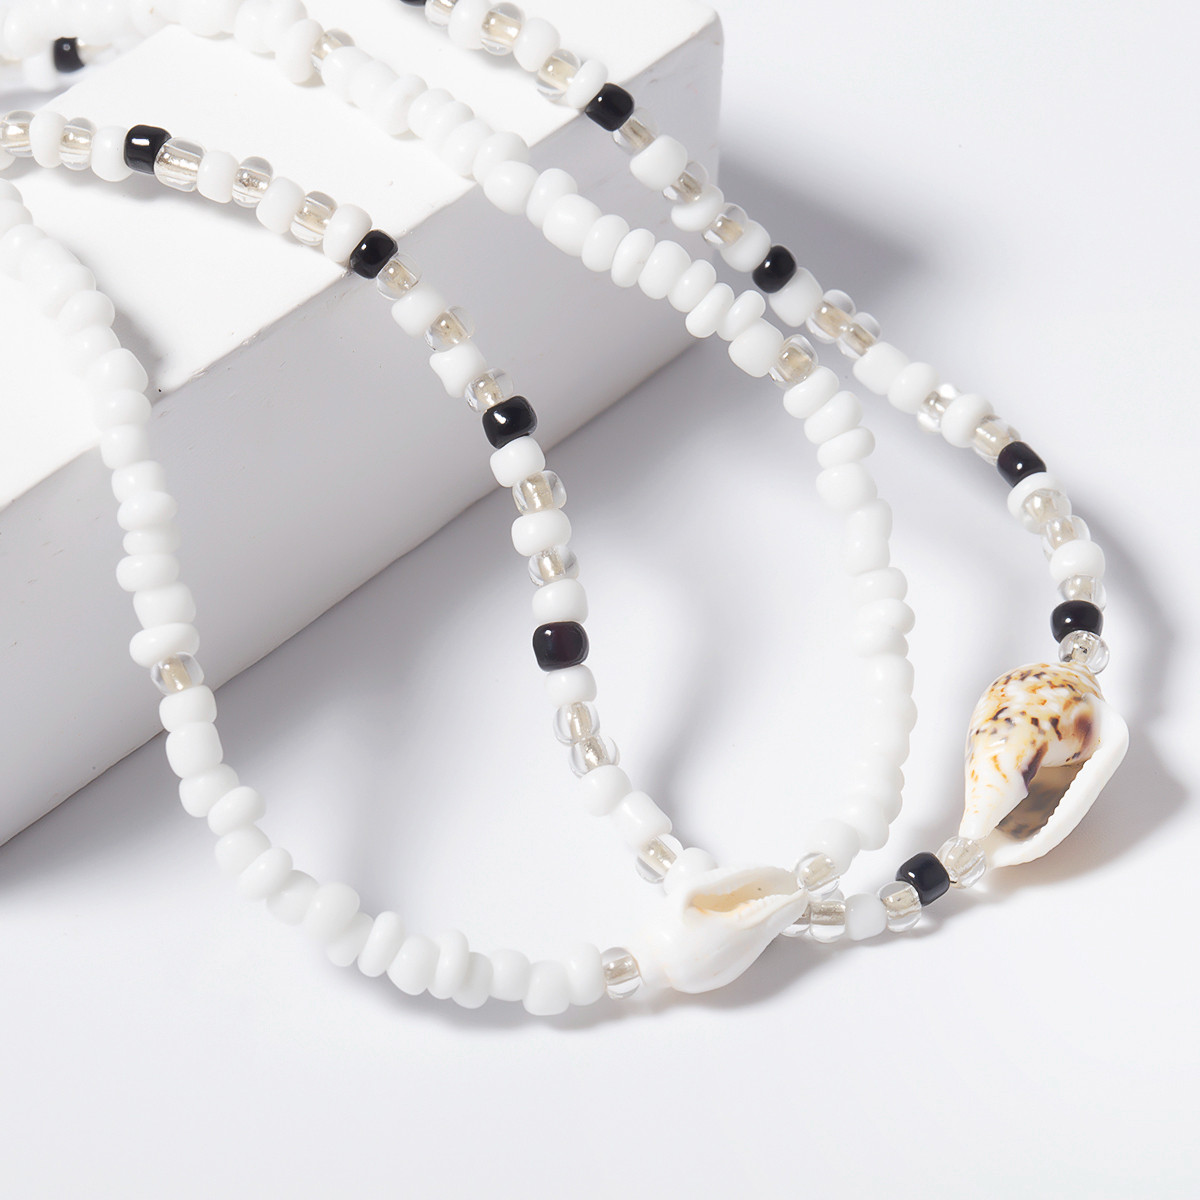 Duo de colliers ras du coup de perles et coquillage blanc